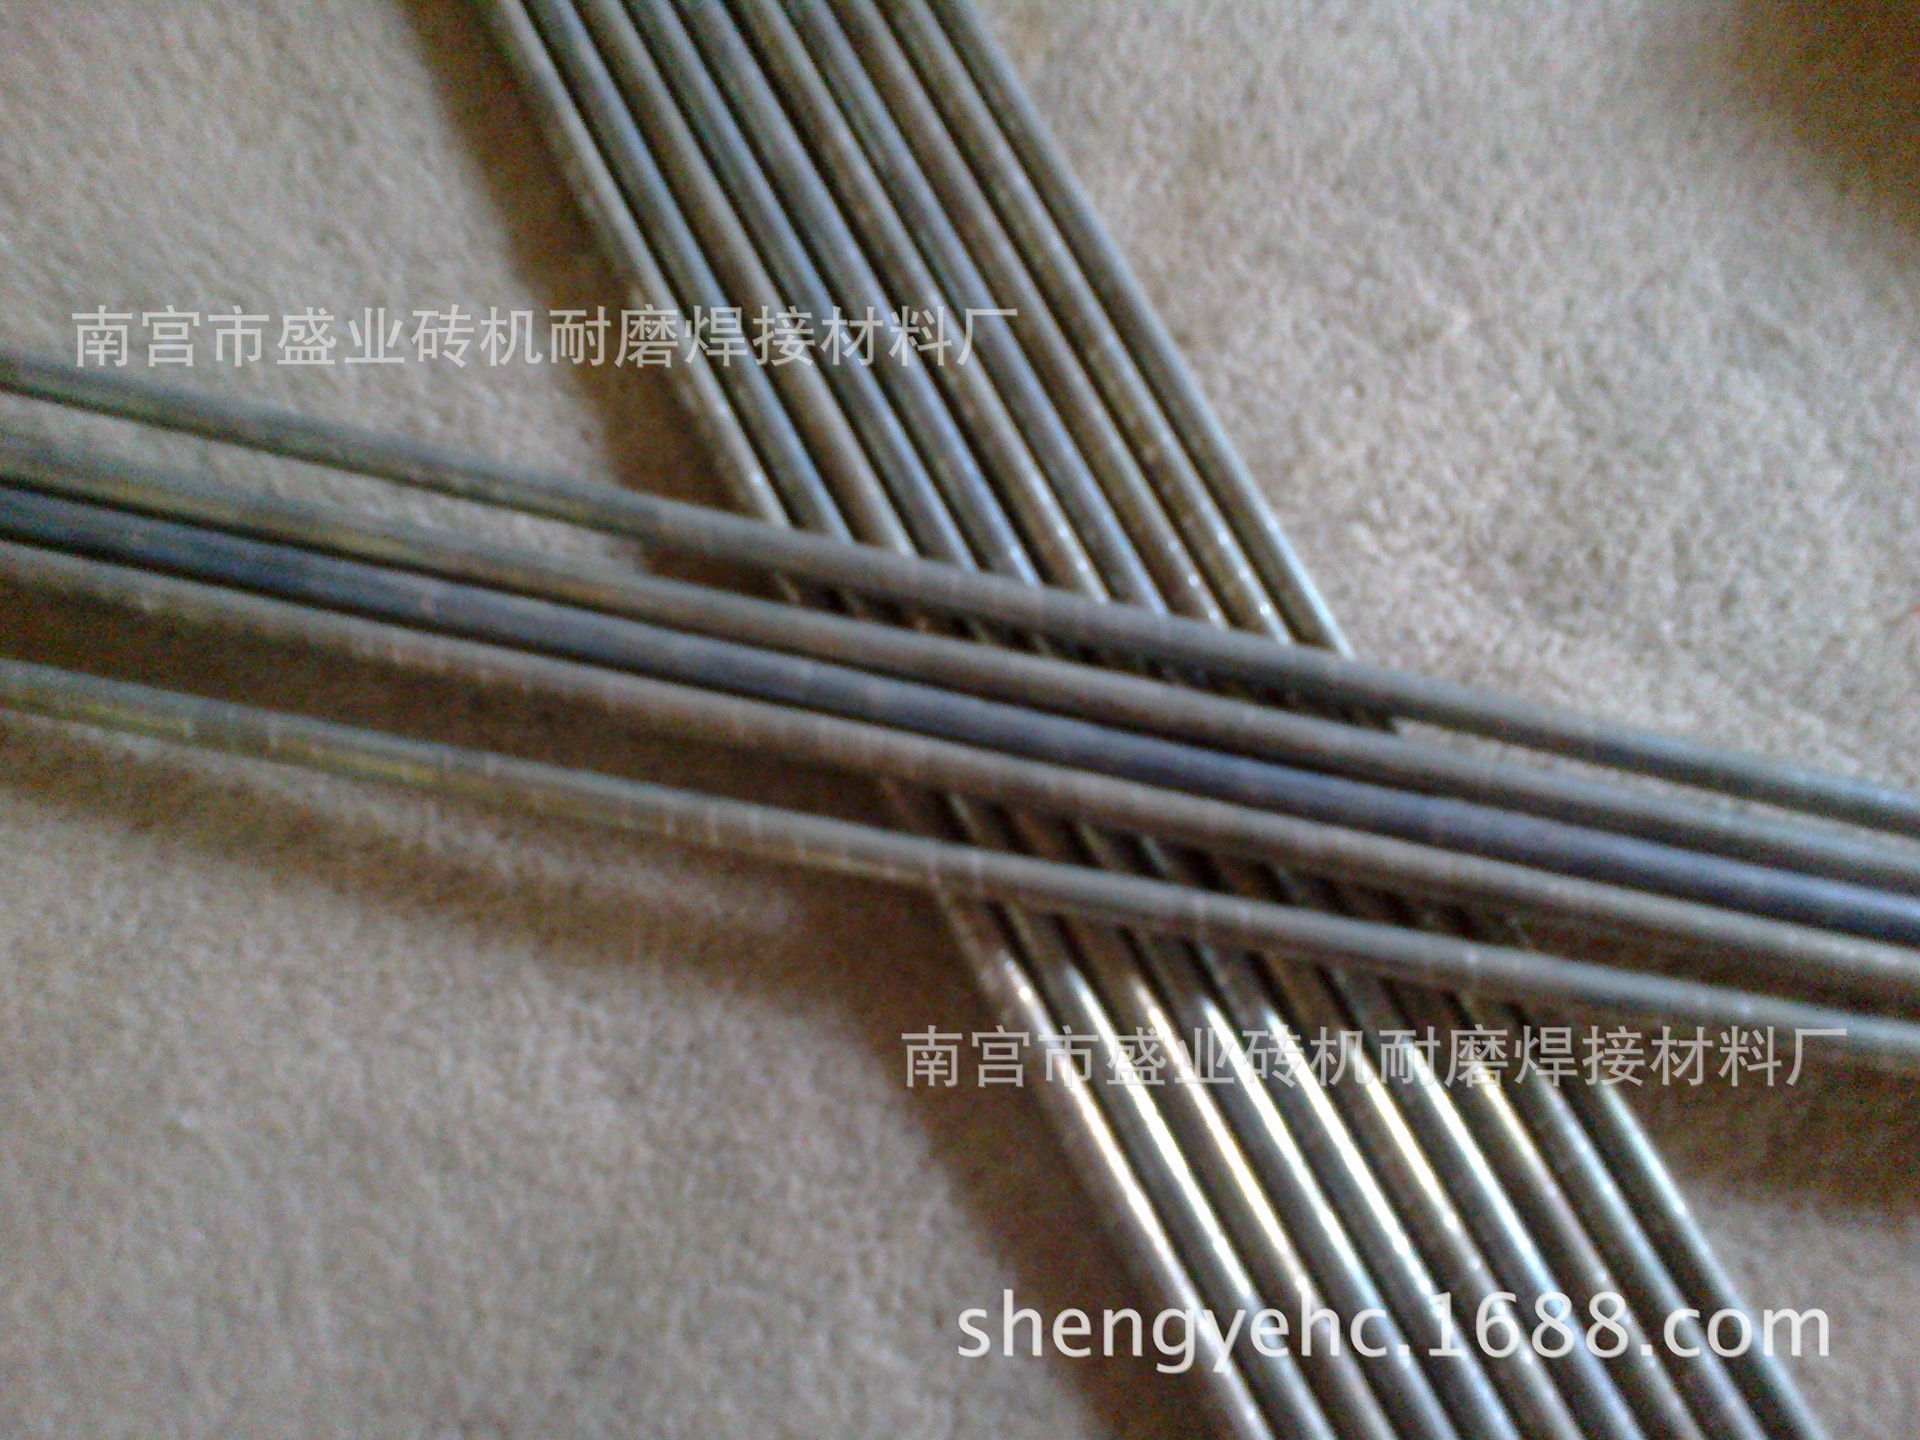 钴基焊丝HS111 高温高压阀门钴基焊丝 热剪切刀刃热锻模耐磨焊丝示例图2